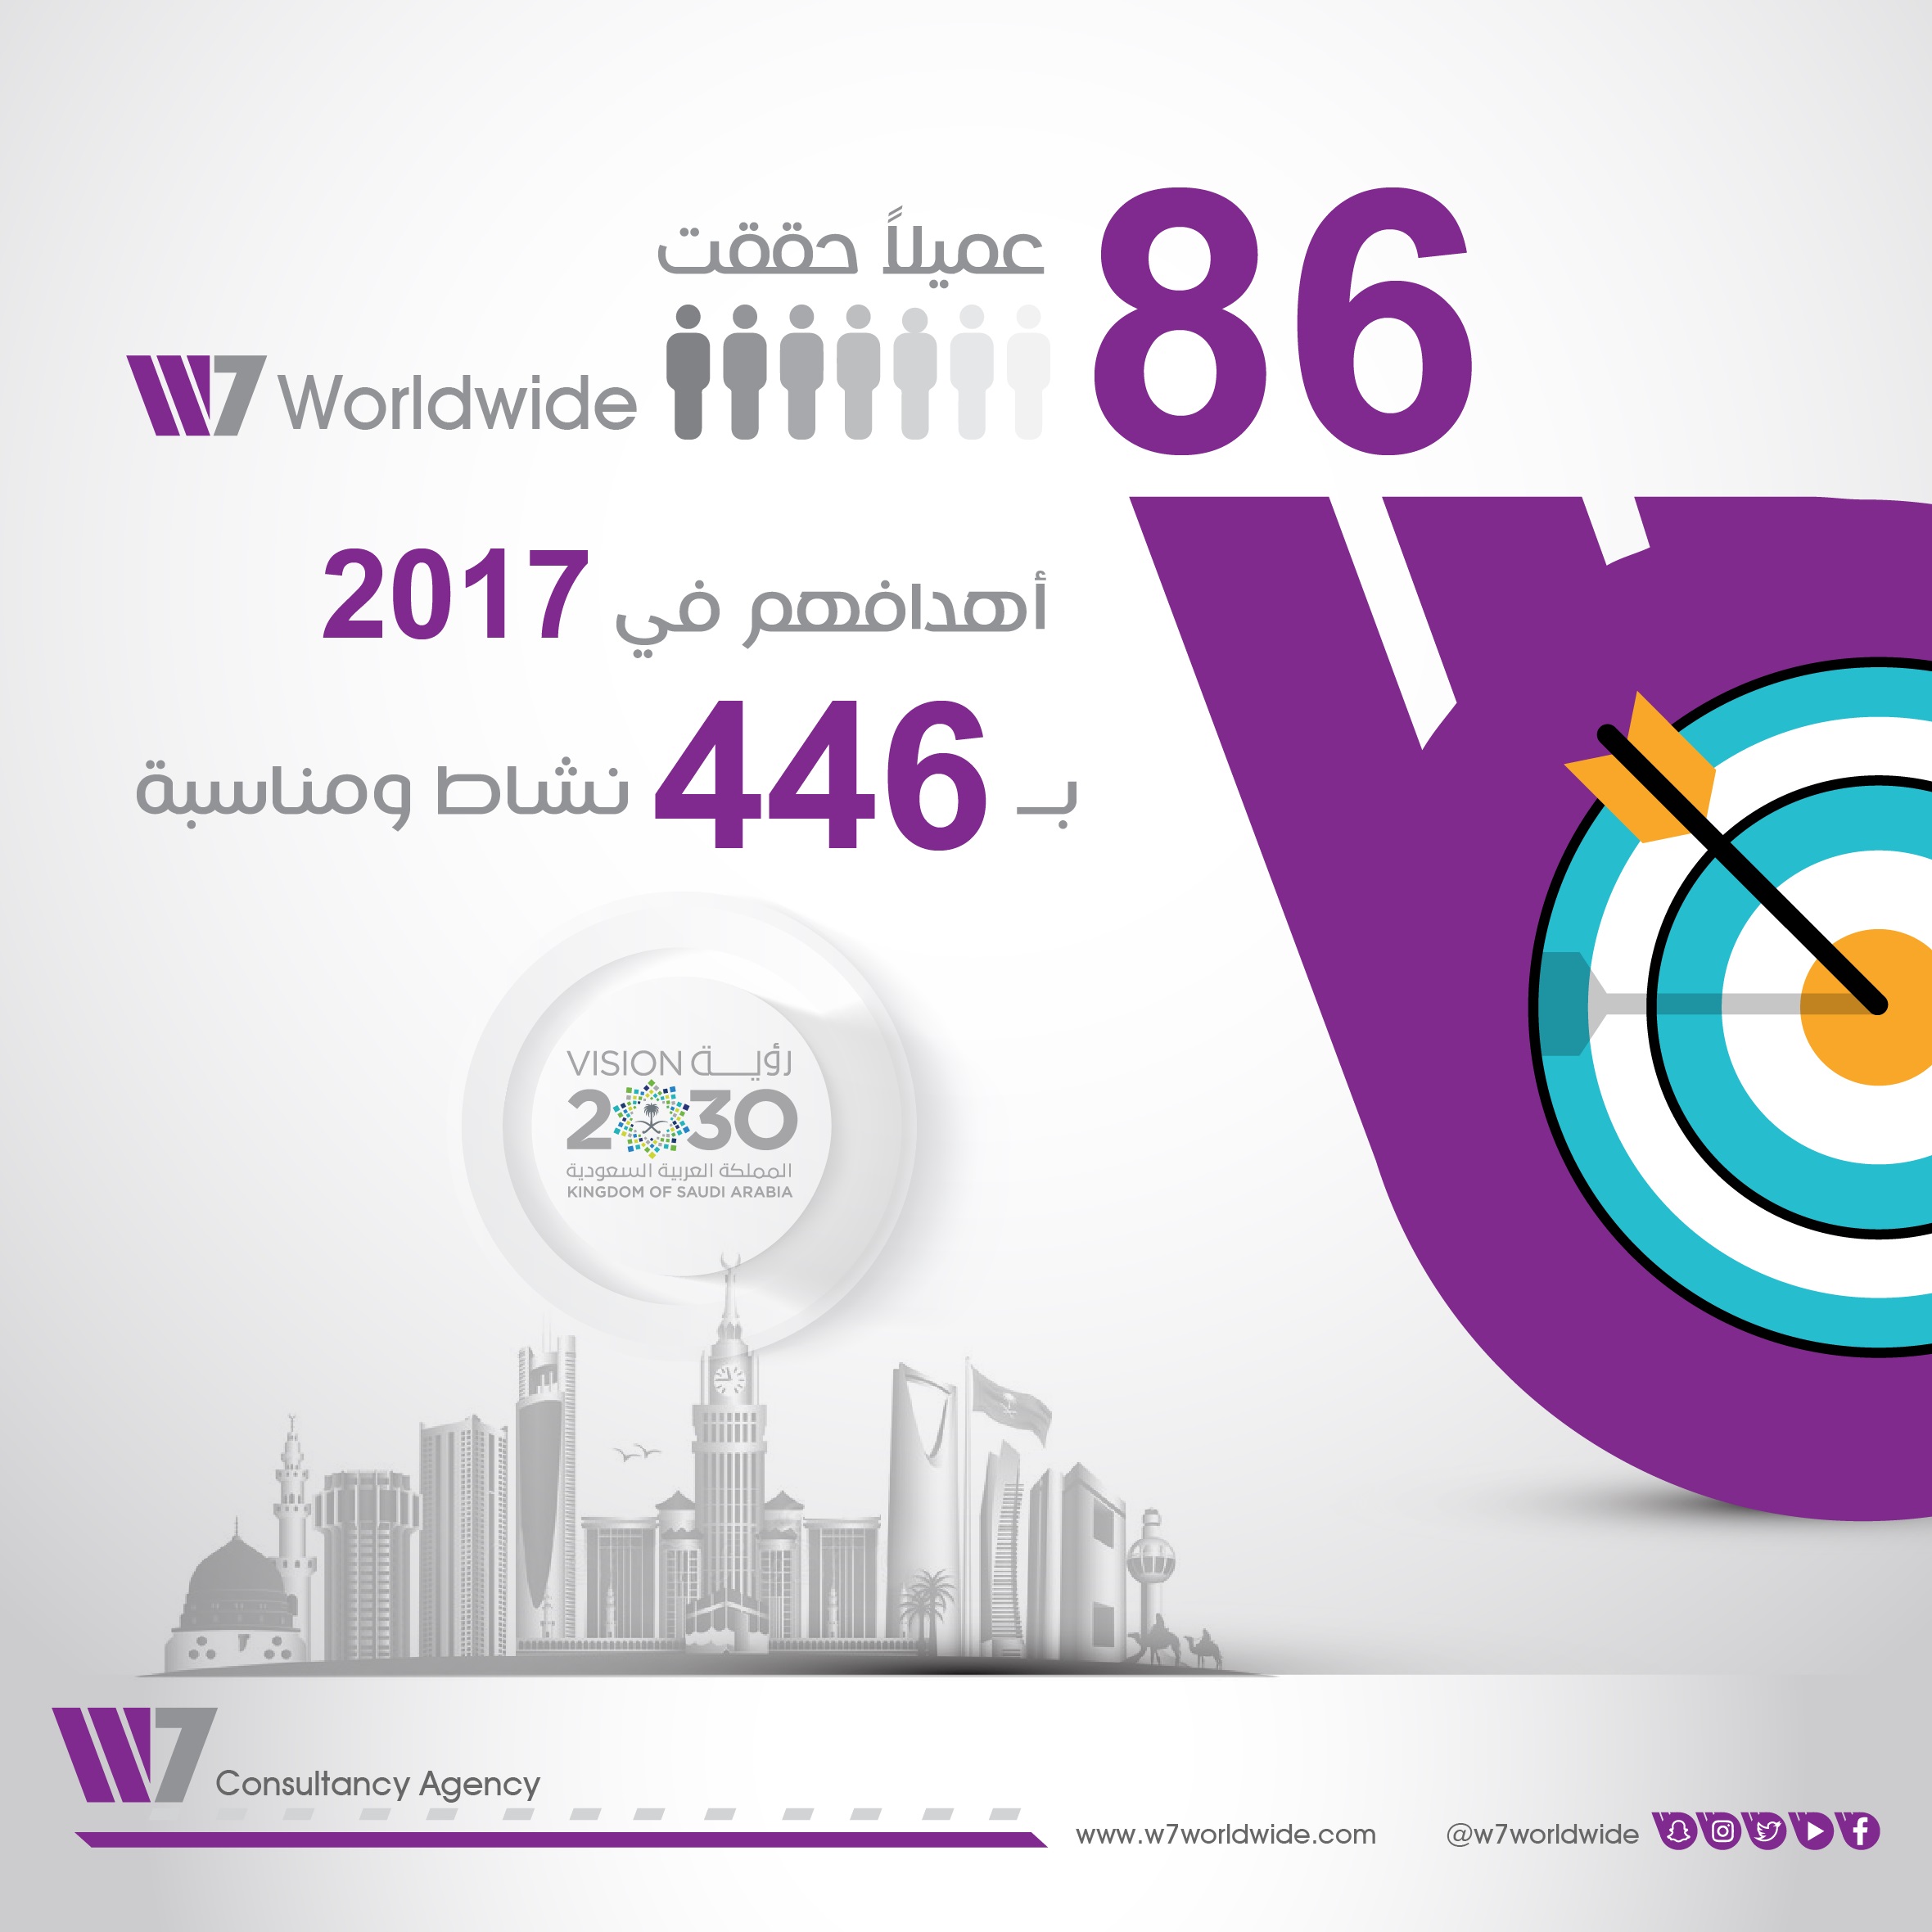 86 شركة تحققت أهدافها في 2017 عبر W7Worldwide